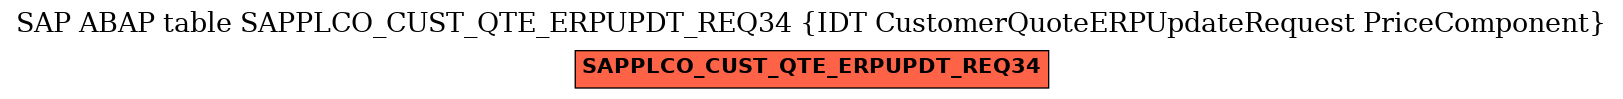 E-R Diagram for table SAPPLCO_CUST_QTE_ERPUPDT_REQ34 (IDT CustomerQuoteERPUpdateRequest PriceComponent)